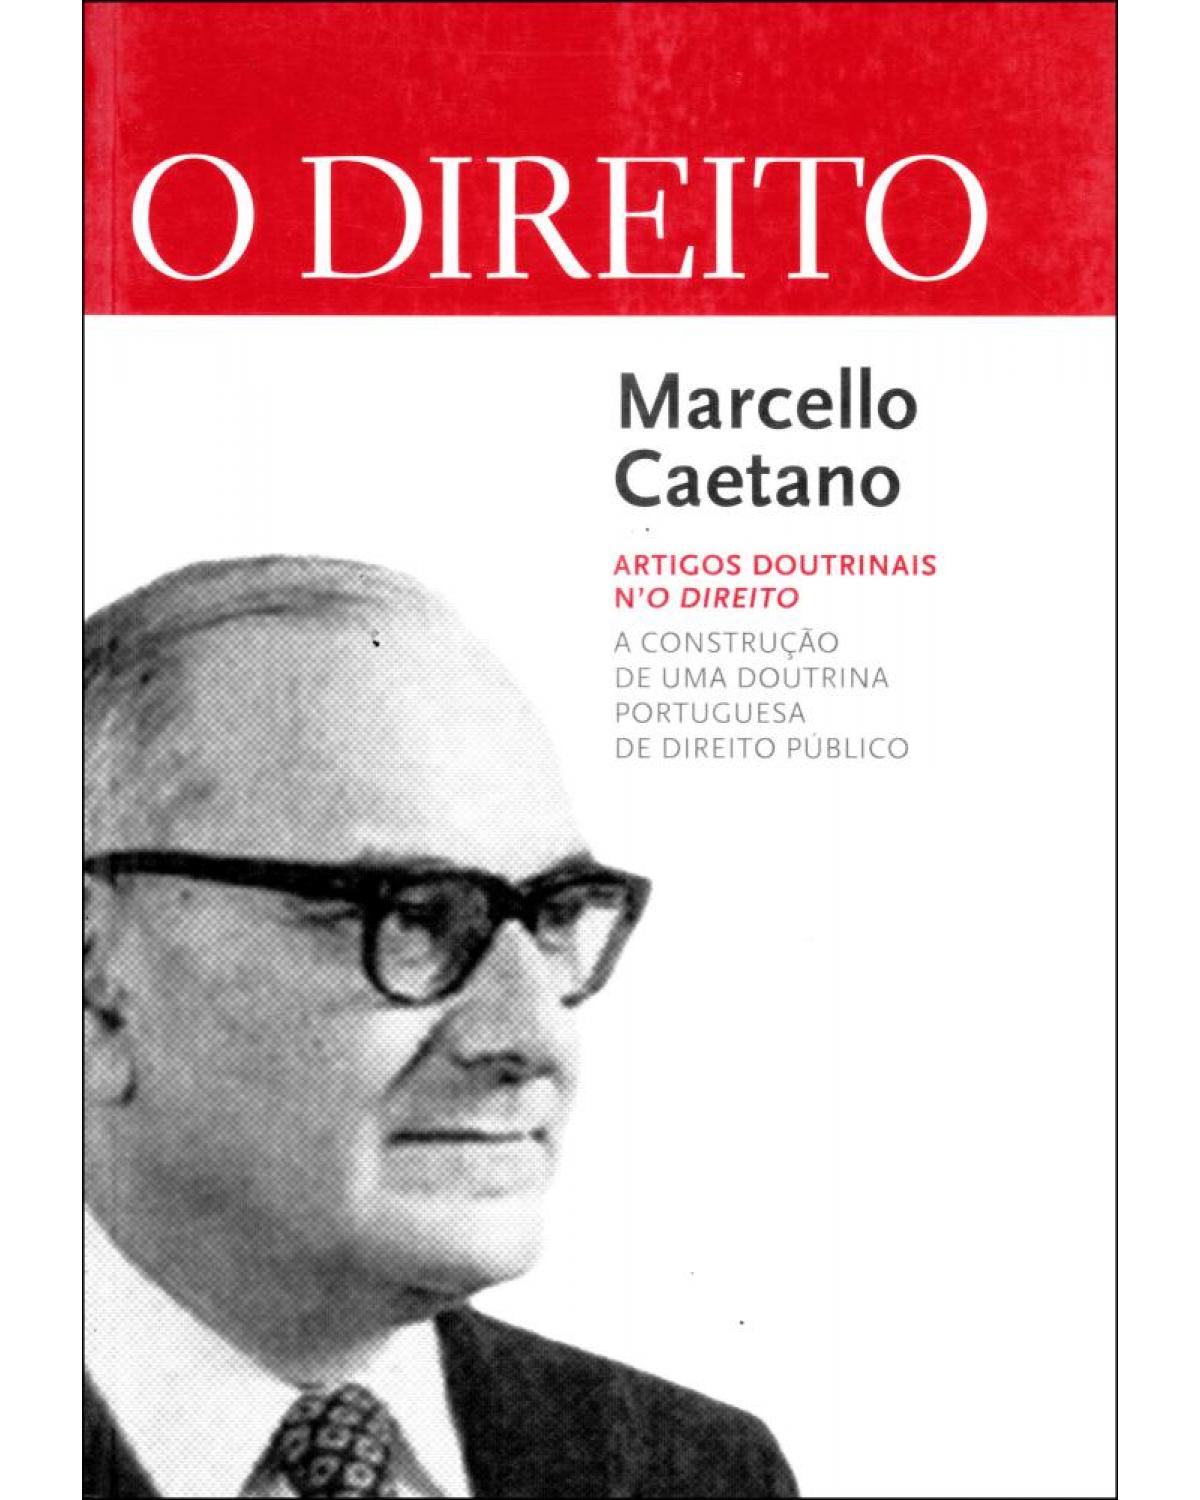 Marcello Caetano - Artigos doutrinais n'O Direito - 1ª Edição | 2012